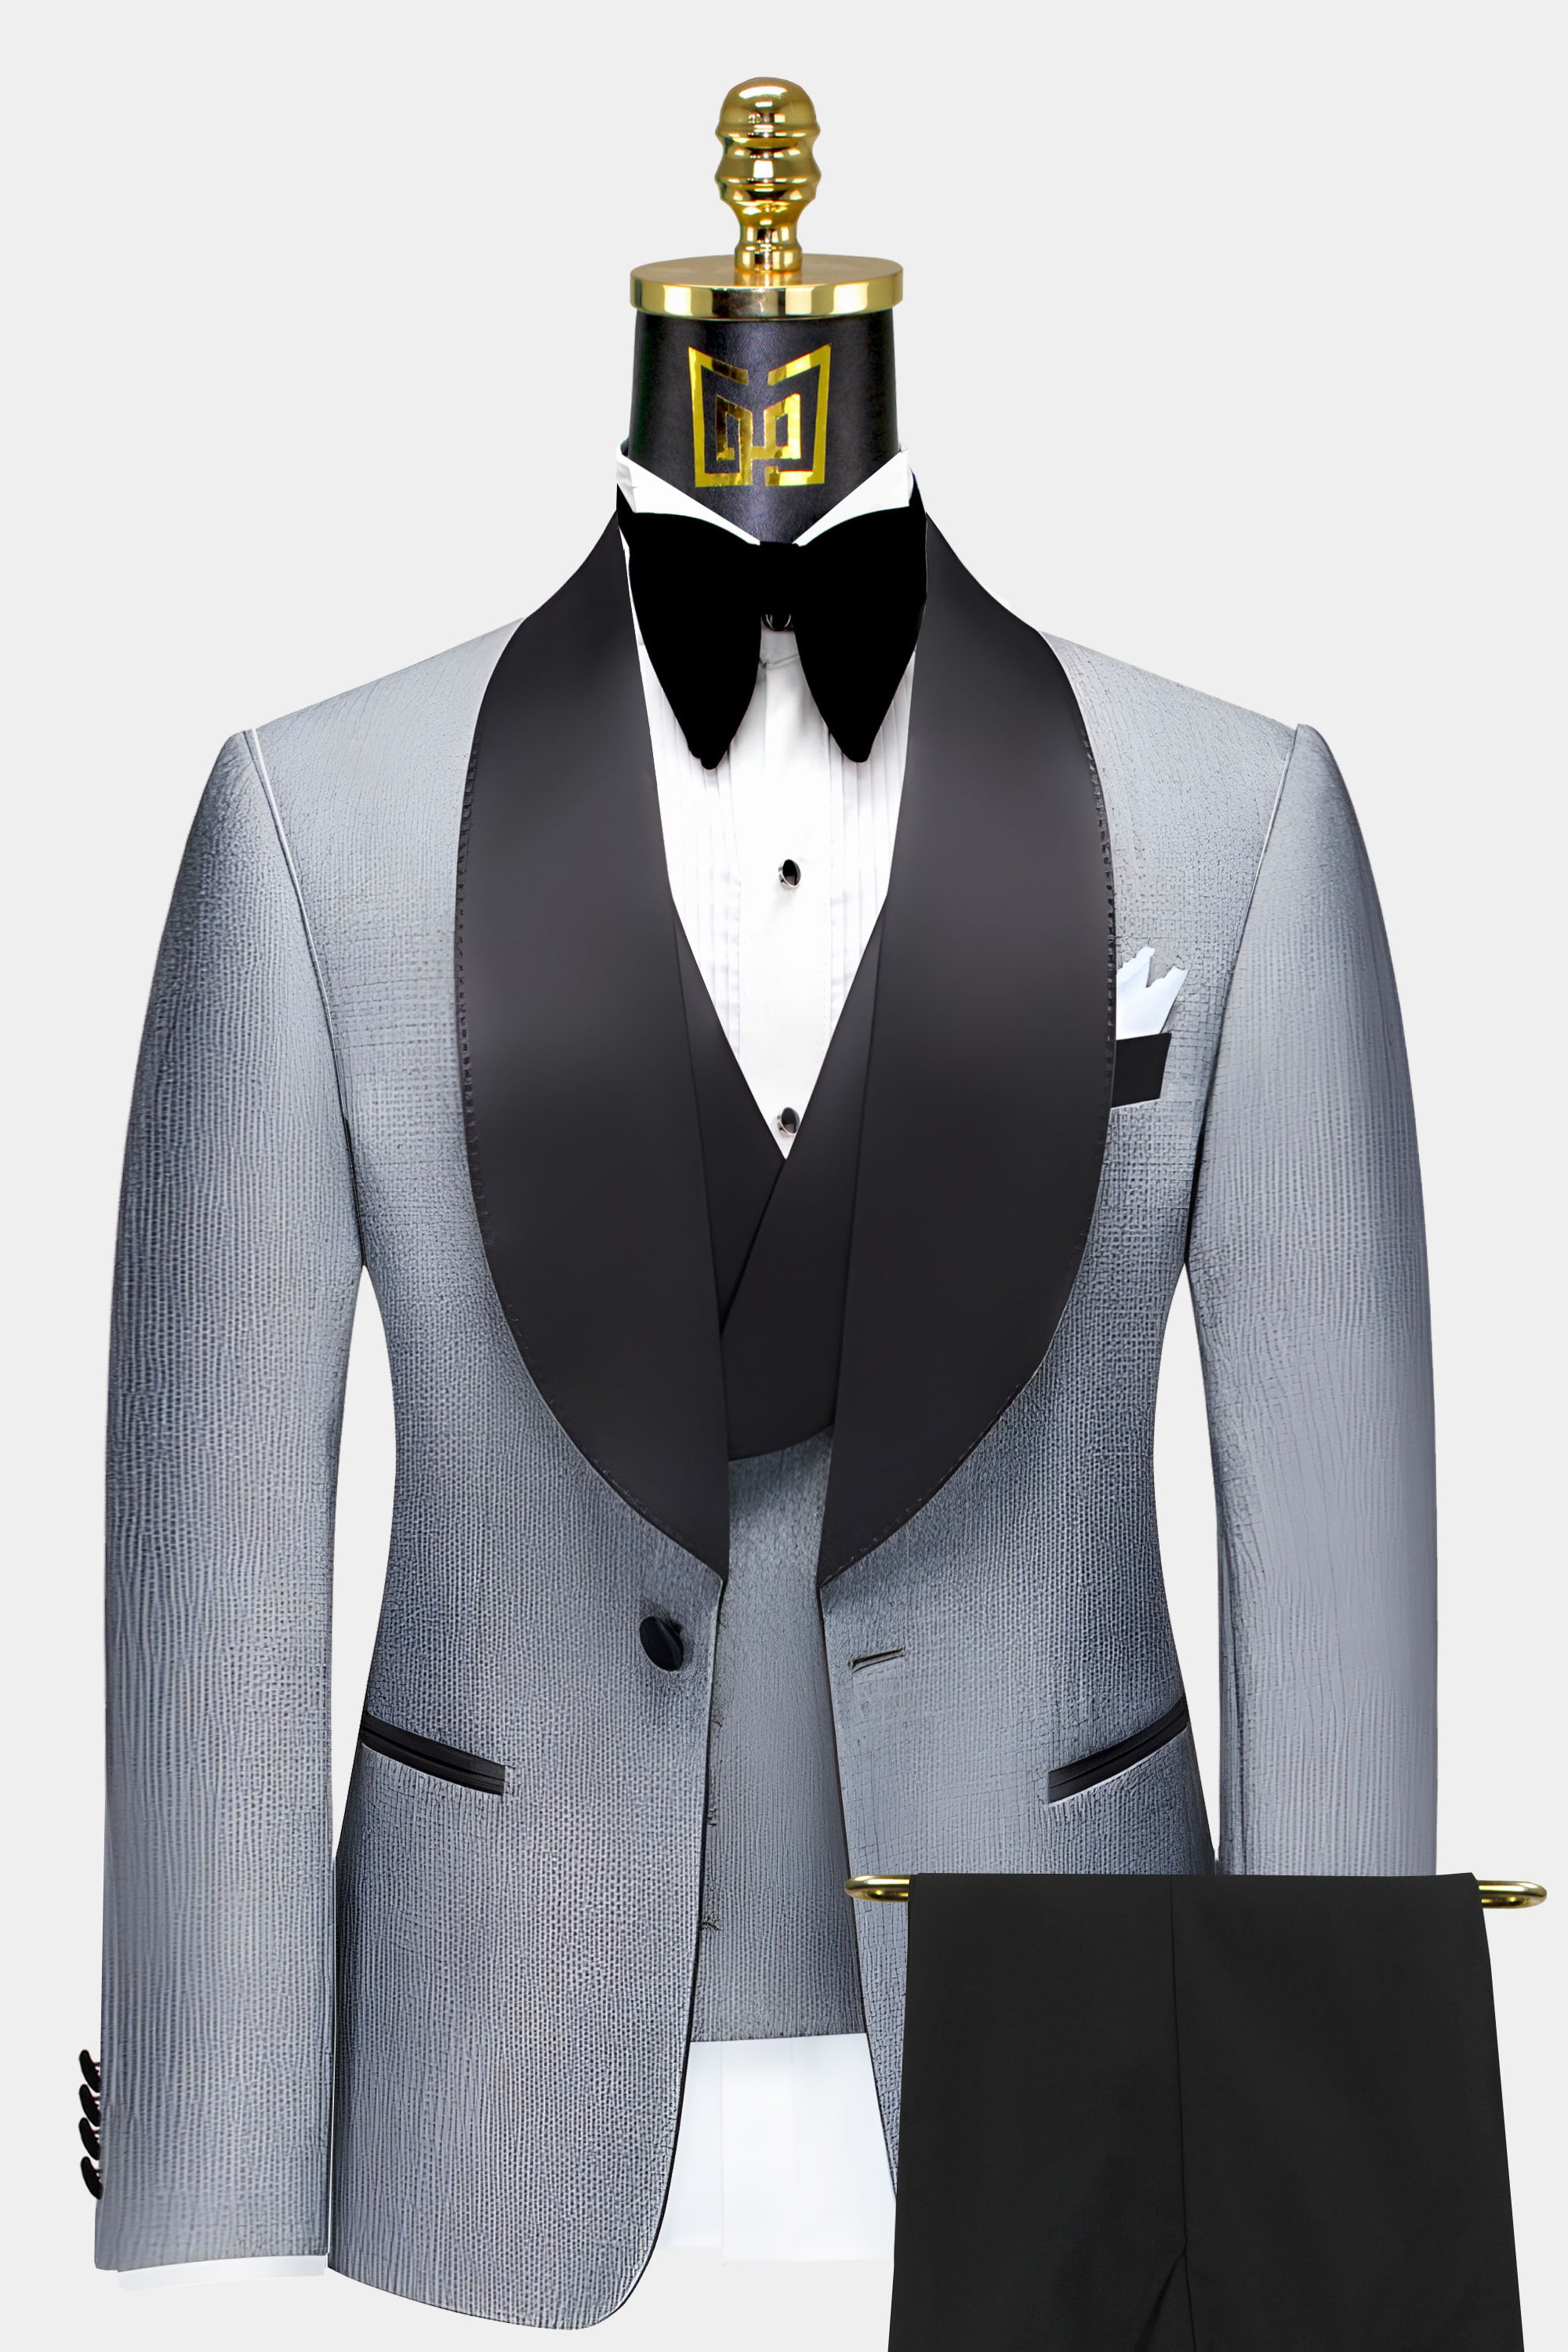 Grey-Tweed-Tuxedo-with-Black-Pant-Groom-Wedding-Suit-from-Gentlemansguru.com